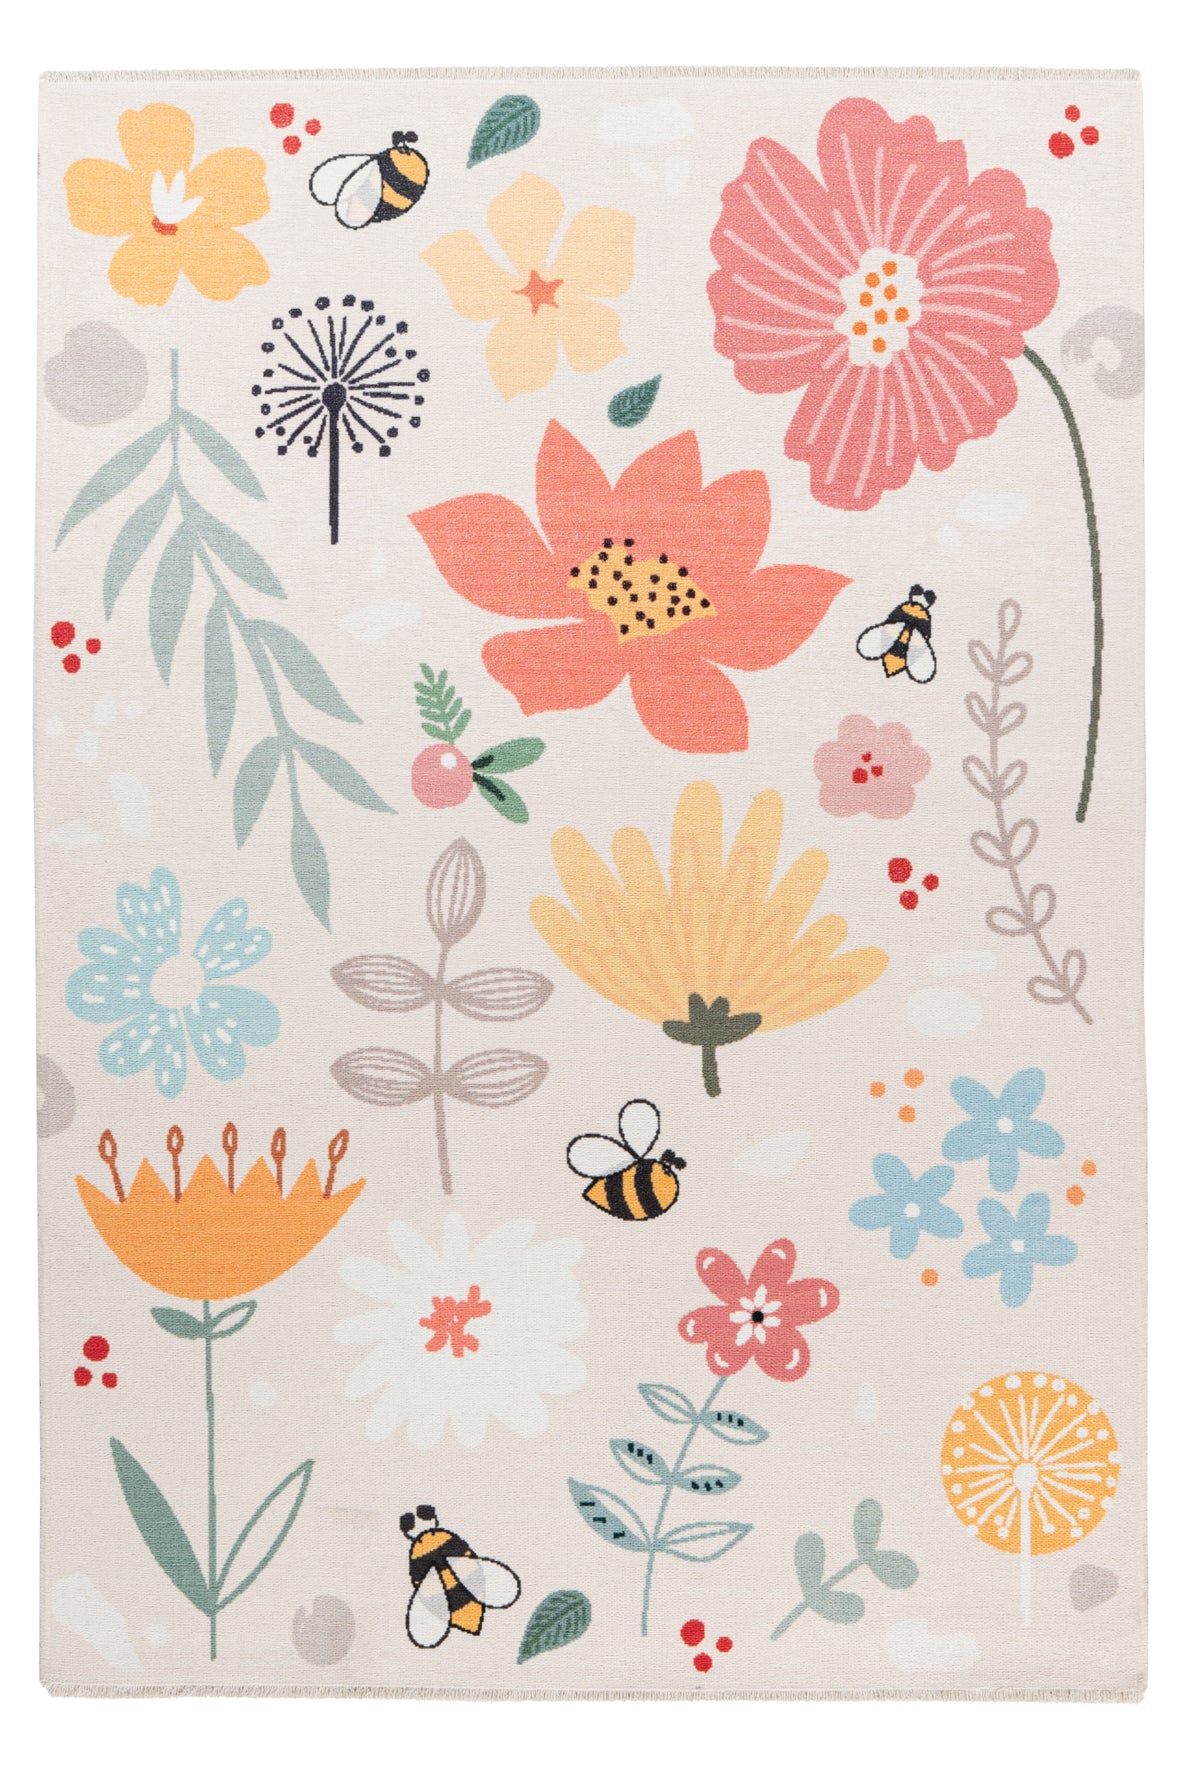 My Greta 623 Blümchen Design Teppich: Für eine glückliche Kindheit und eine nachhaltige Zukunft